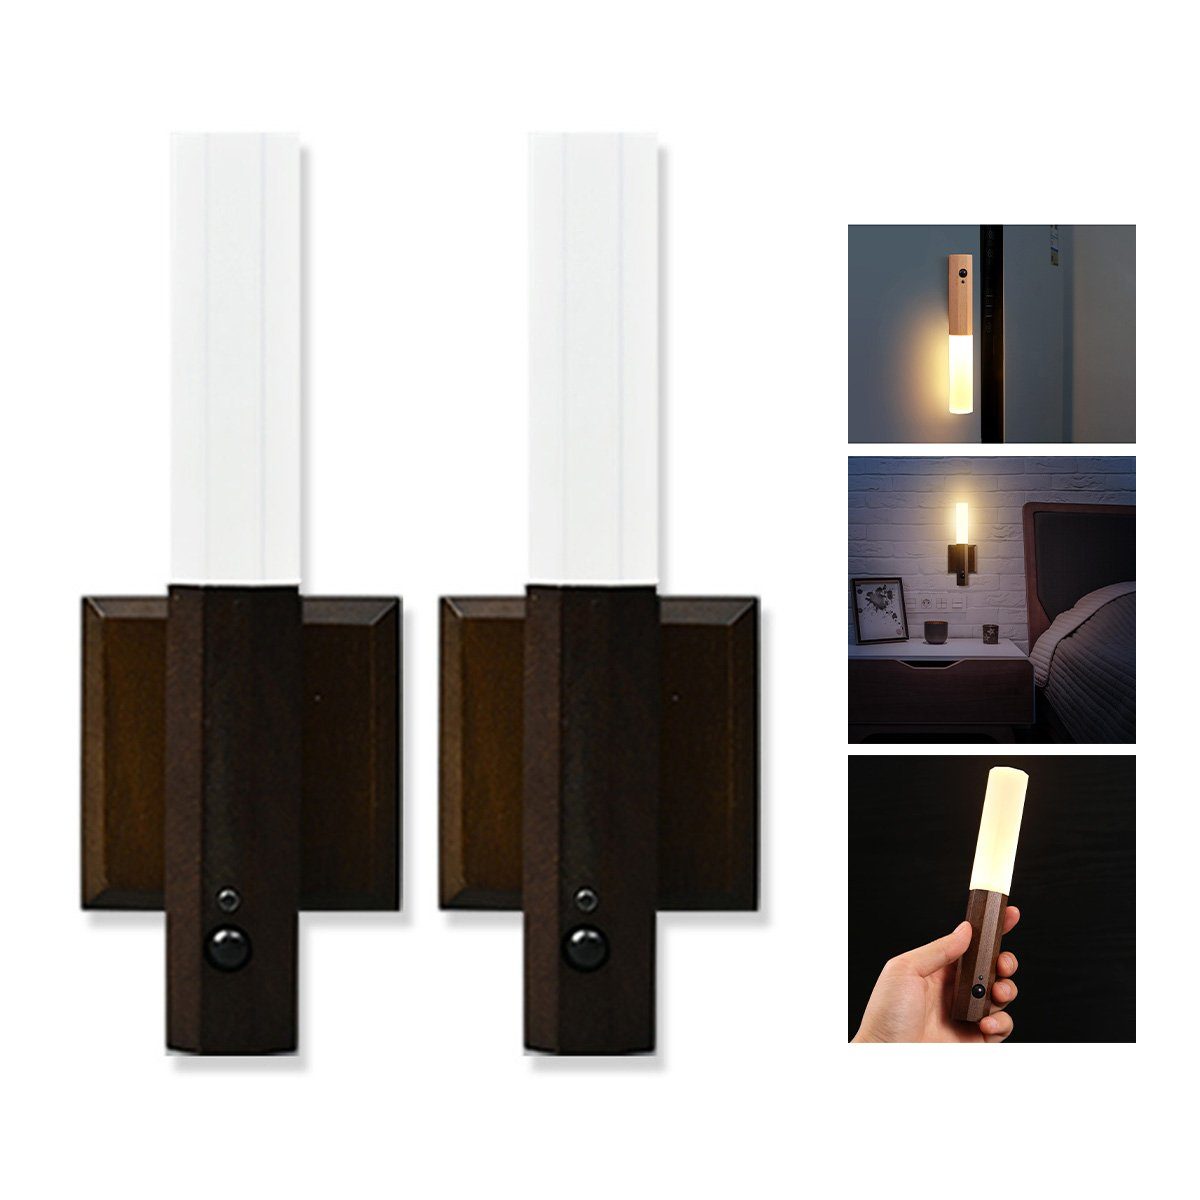 Welikera Wandleuchte 2 Stück Echtholz Smart Bewegungssensor Licht,Vielseitige Wandlampe Walnussholz | Wandleuchten